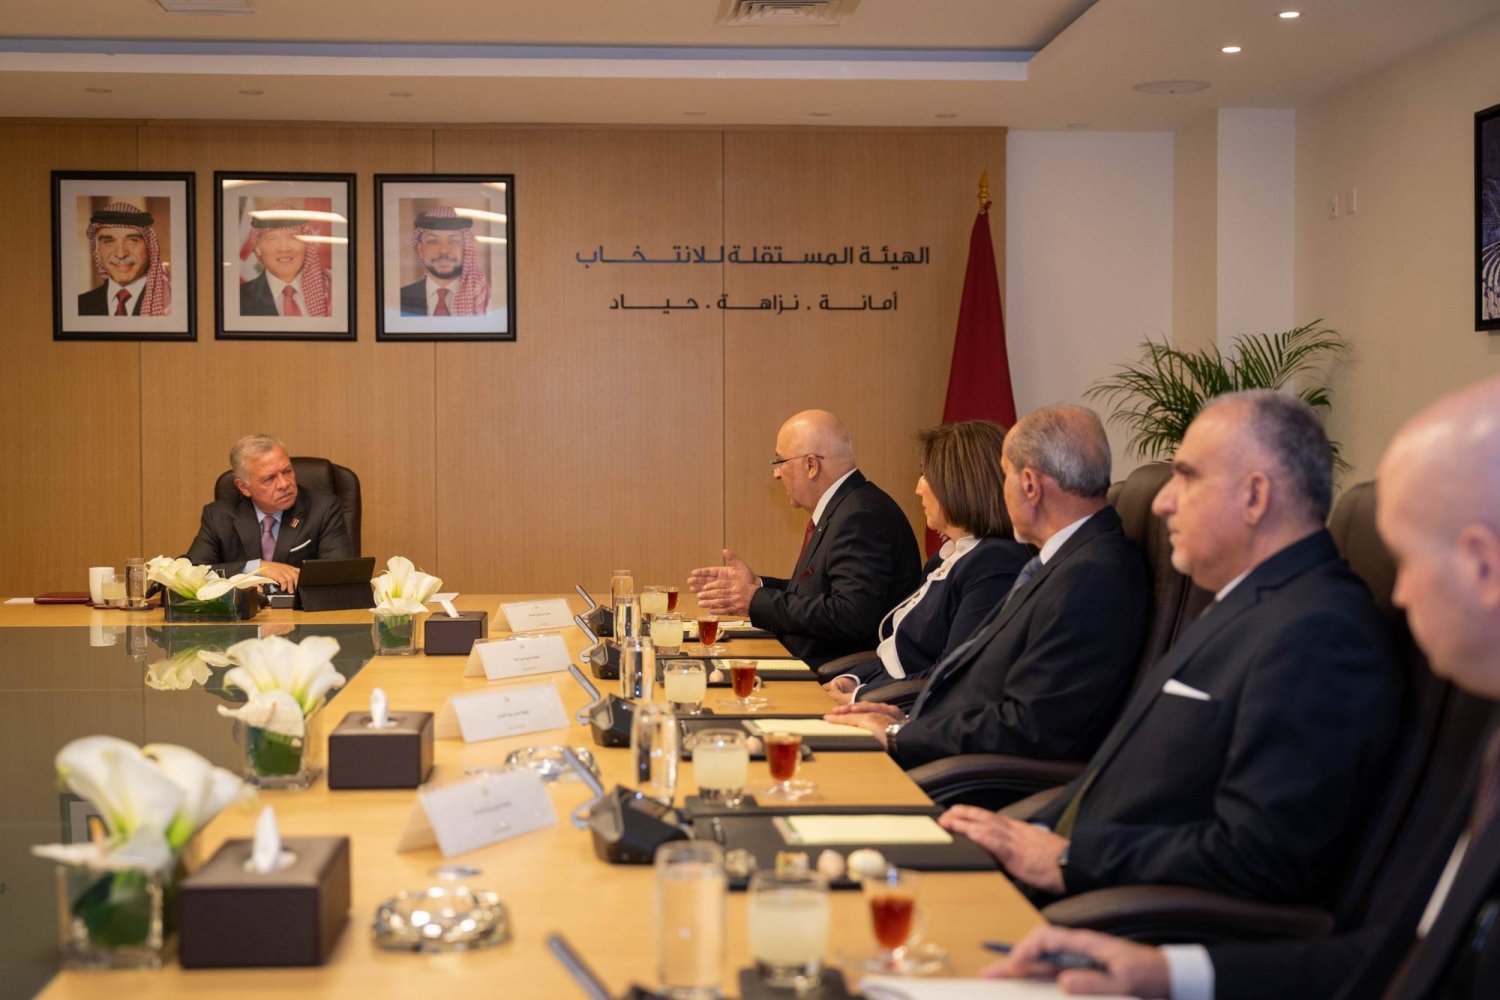 الملك عبد الله الثاني يزور الهيئة المستقلة للانتخاب ويلتقي رئيس وأعضاء مجلس مفوضيها (الديوان الملكي)